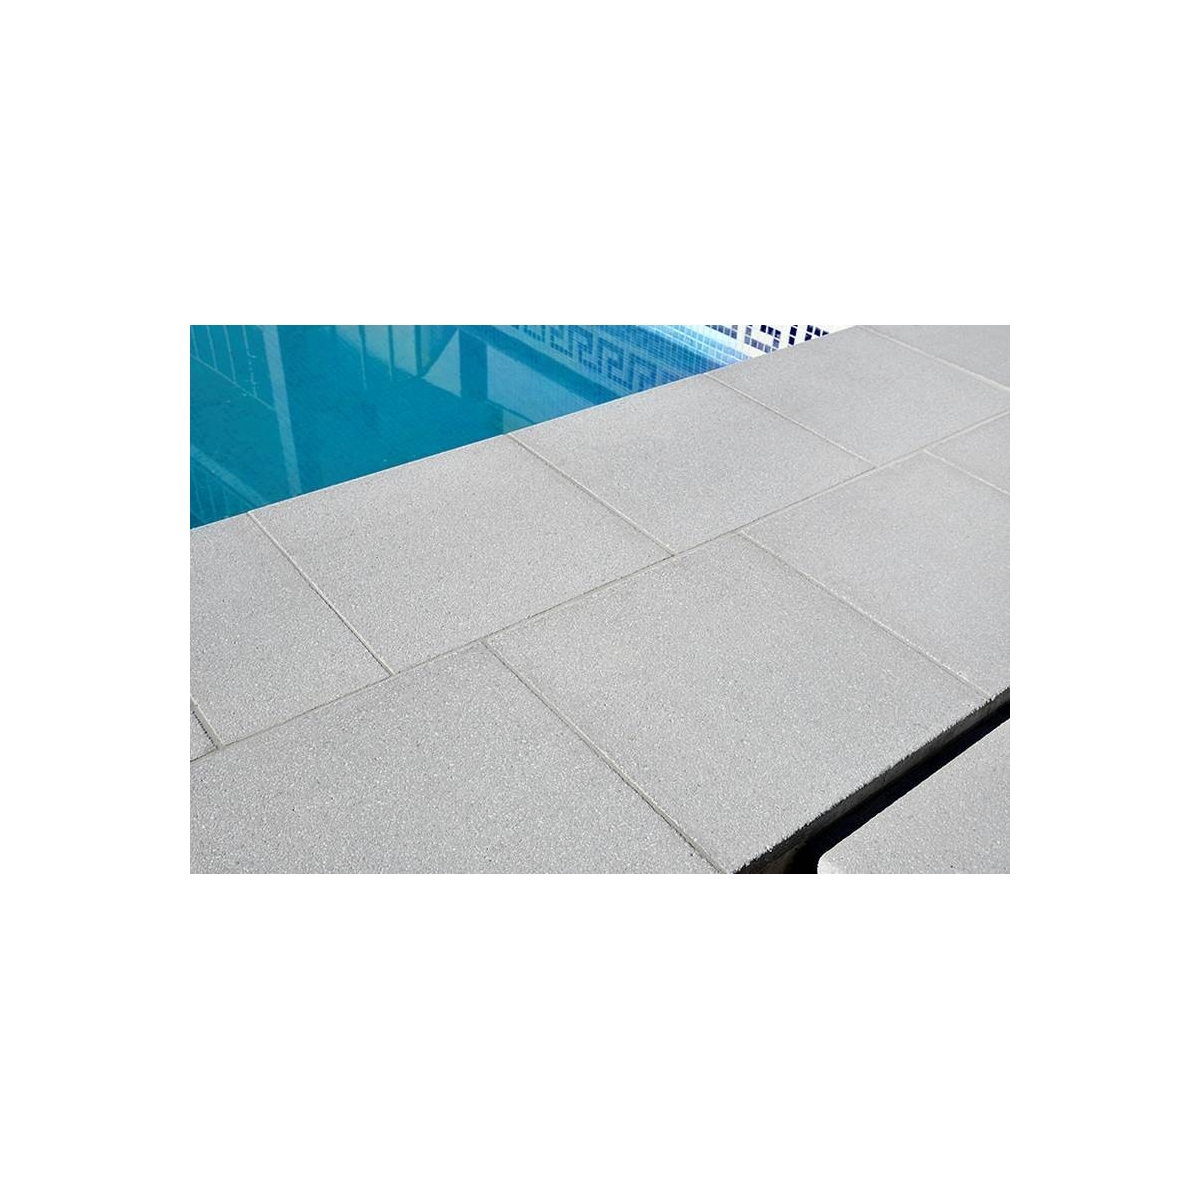 Jerez Prefabricados López quadrado para piscina